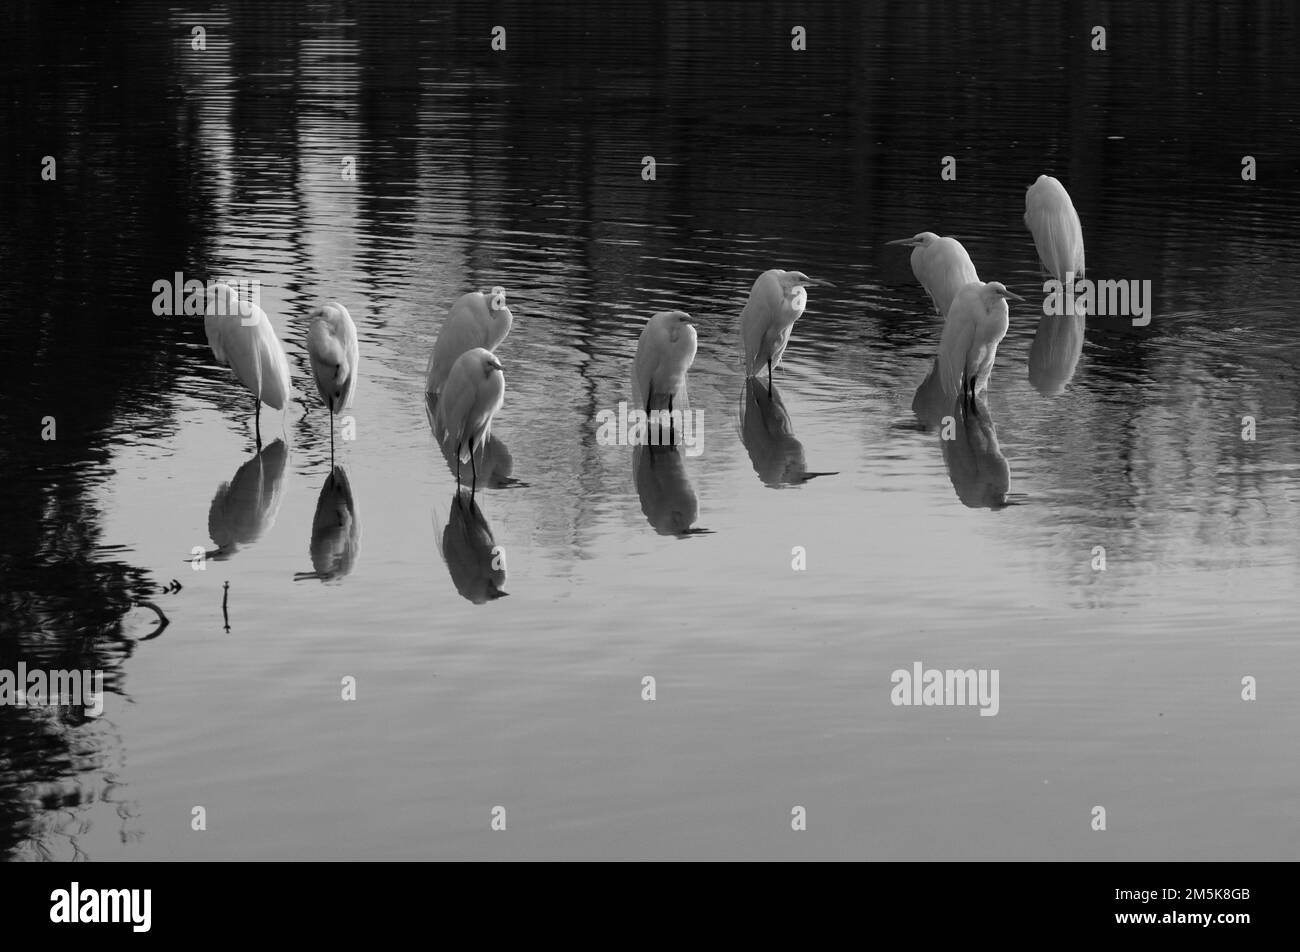 Photo en noir et blanc d'un troupeau de Grands Egrets blancs debout sur leurs réflexions dans l'eau calme d'un lac. Banque D'Images